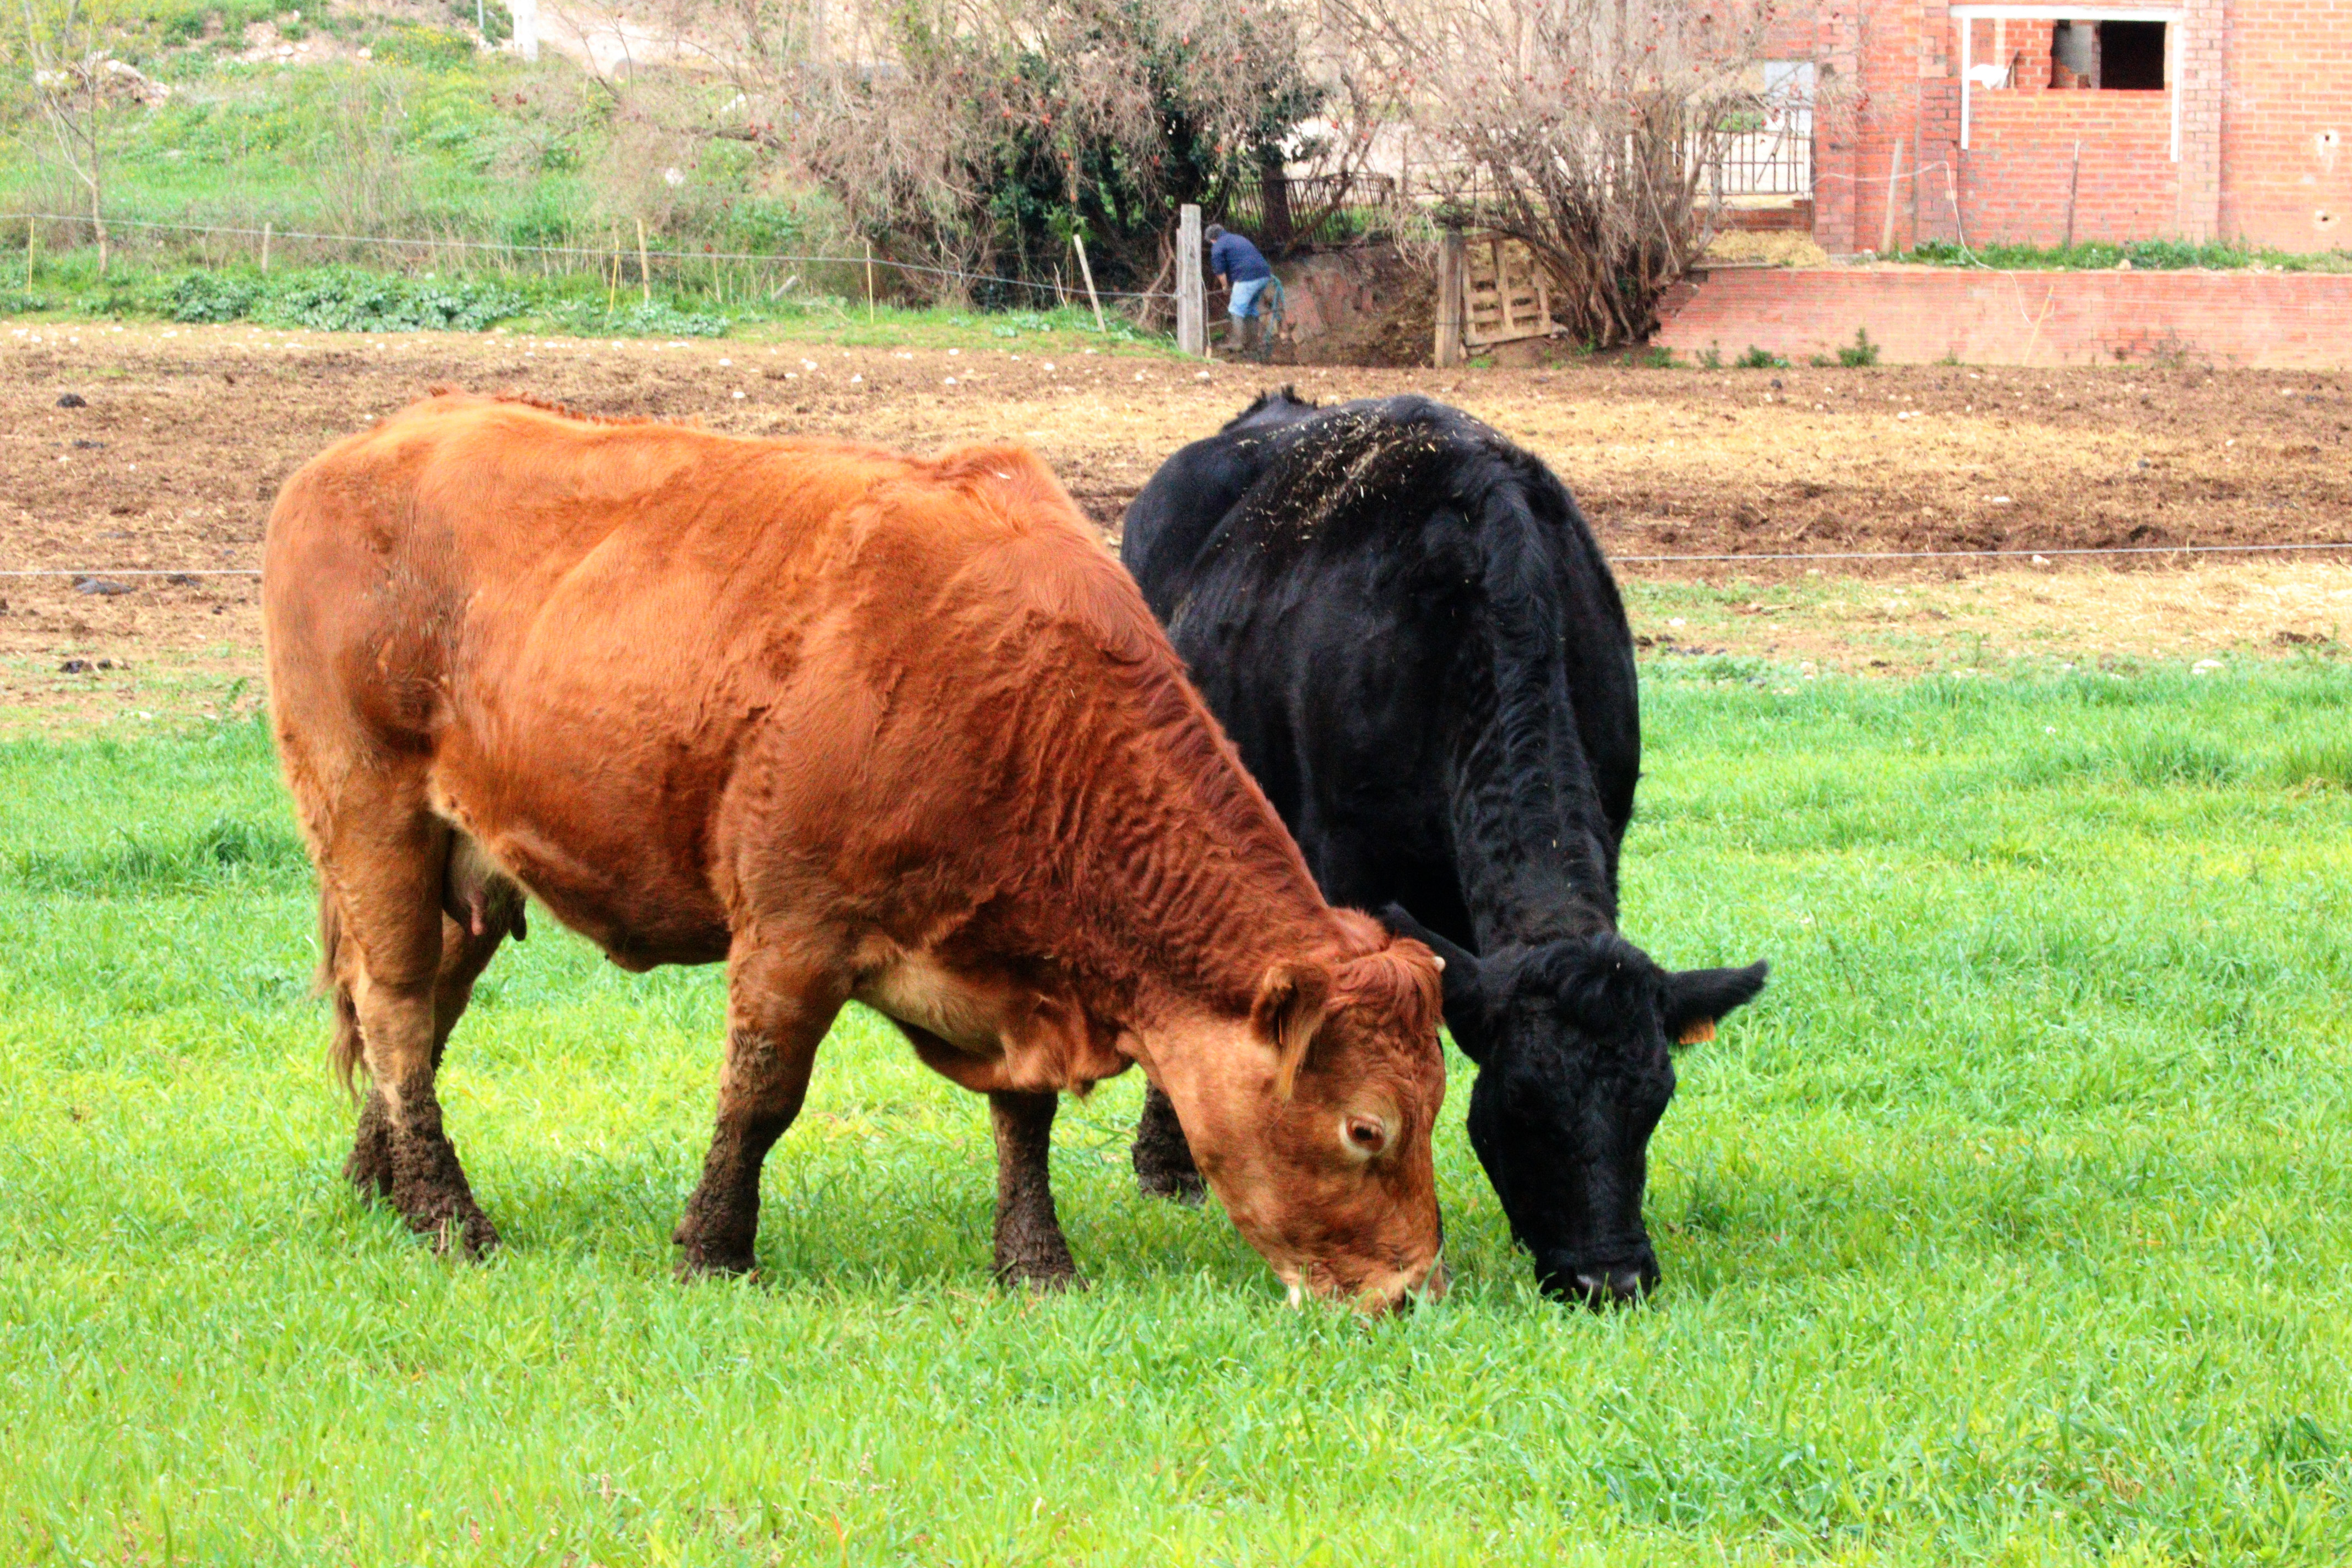 Les últimes pluges garanteixen un "bona quantitat" de farratges als pagesos gironins per alimentar el bestiar